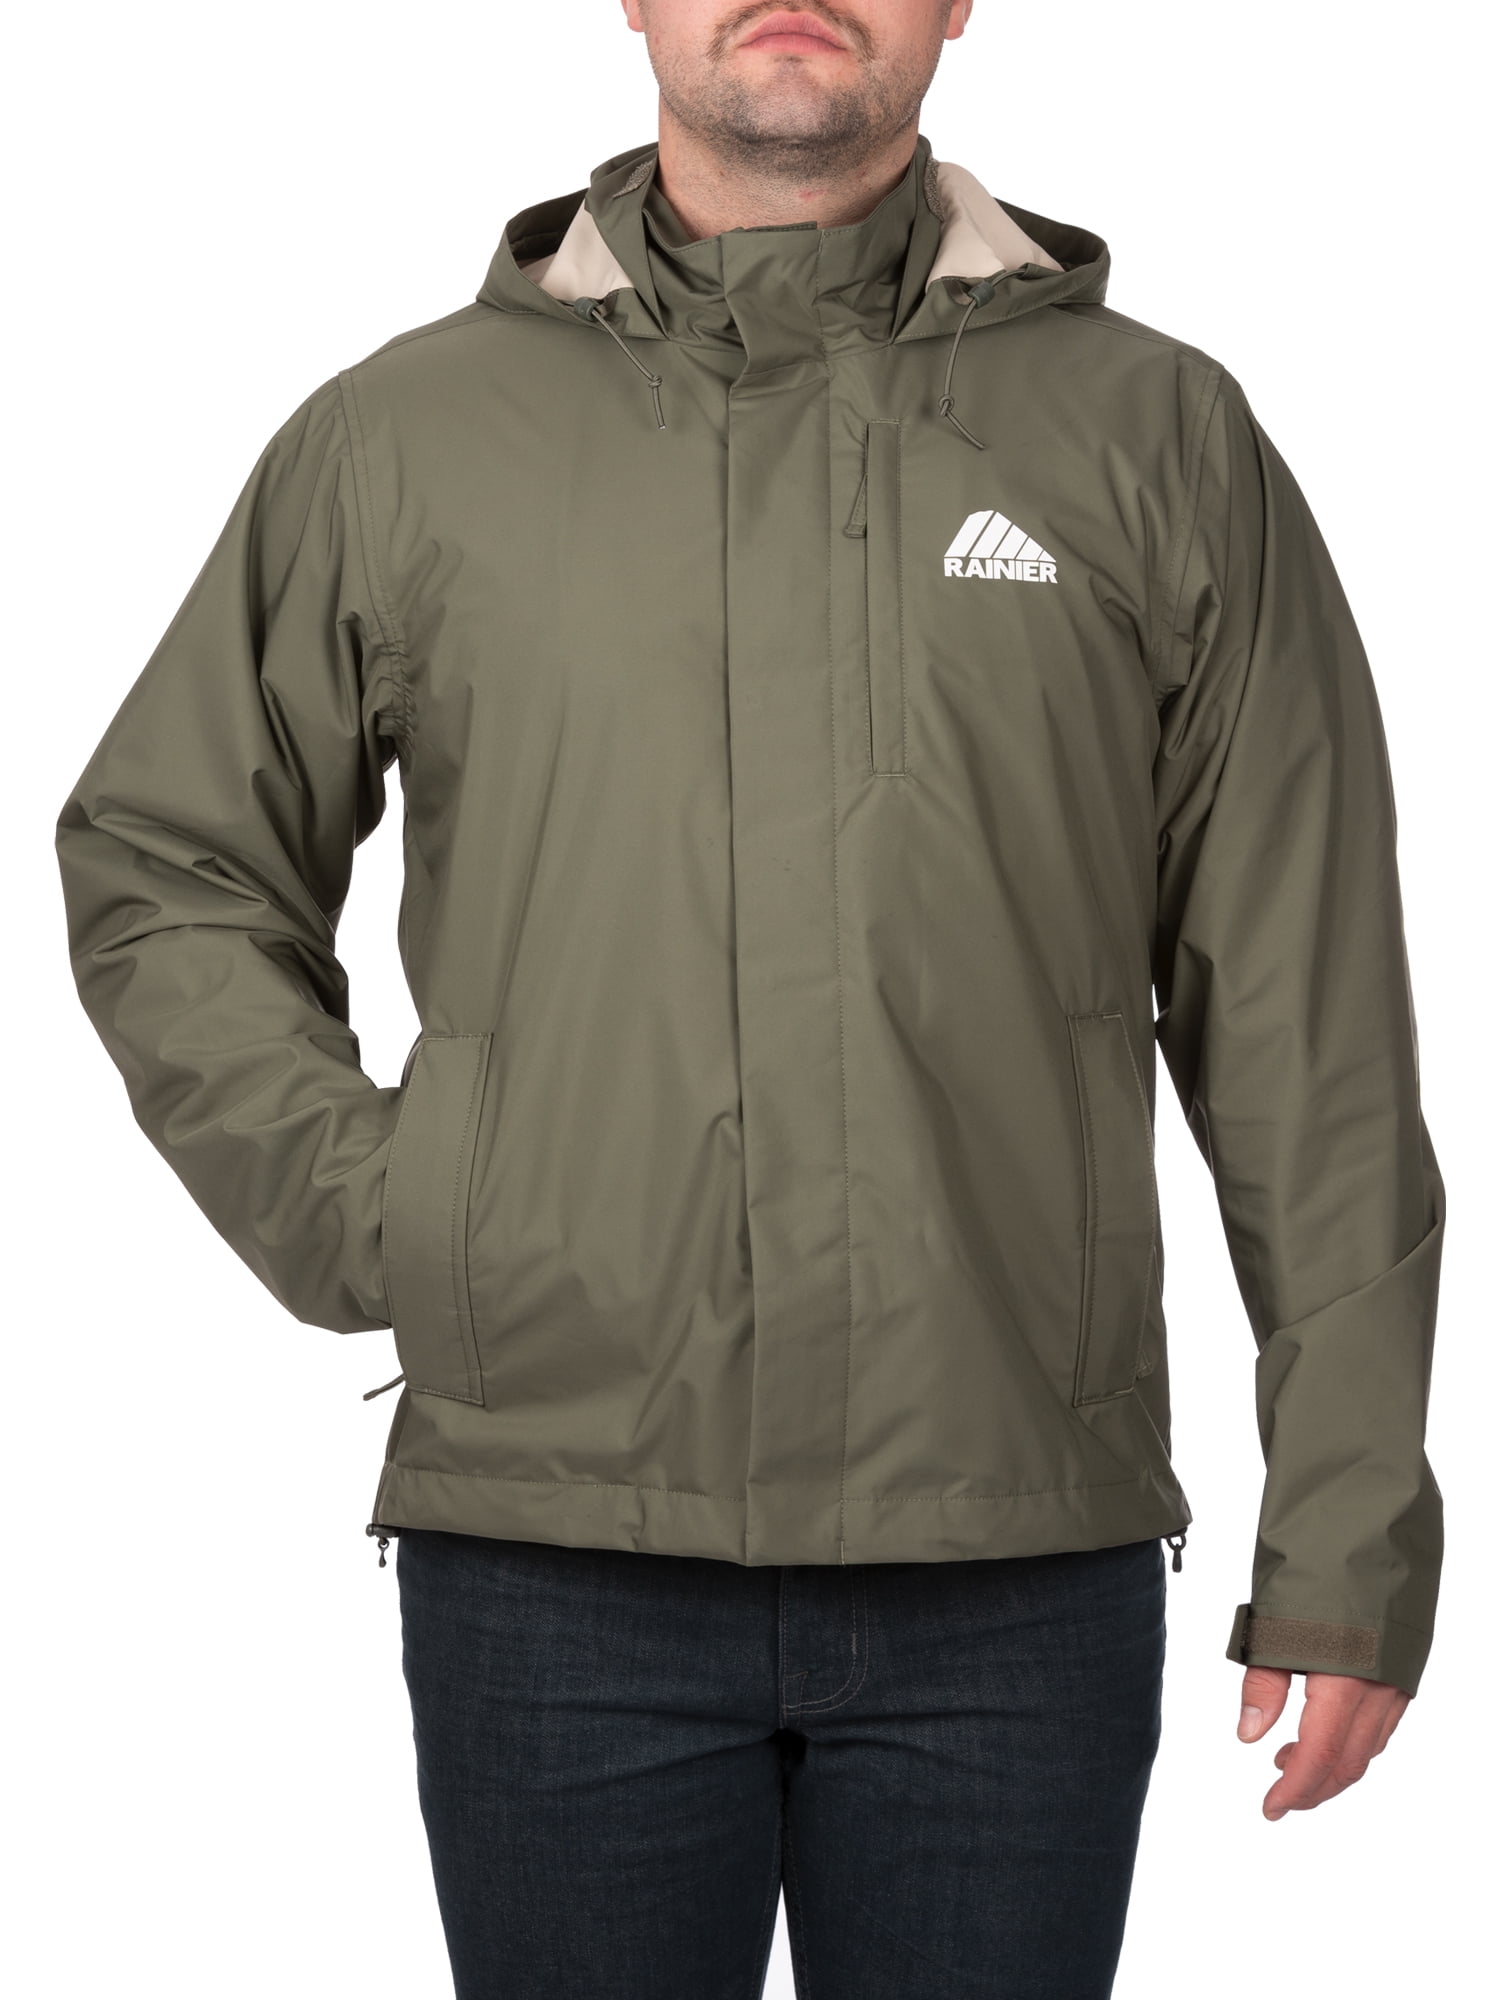 Rainier Men's Waterproof Breathable Premium Rain Jacket in Sage